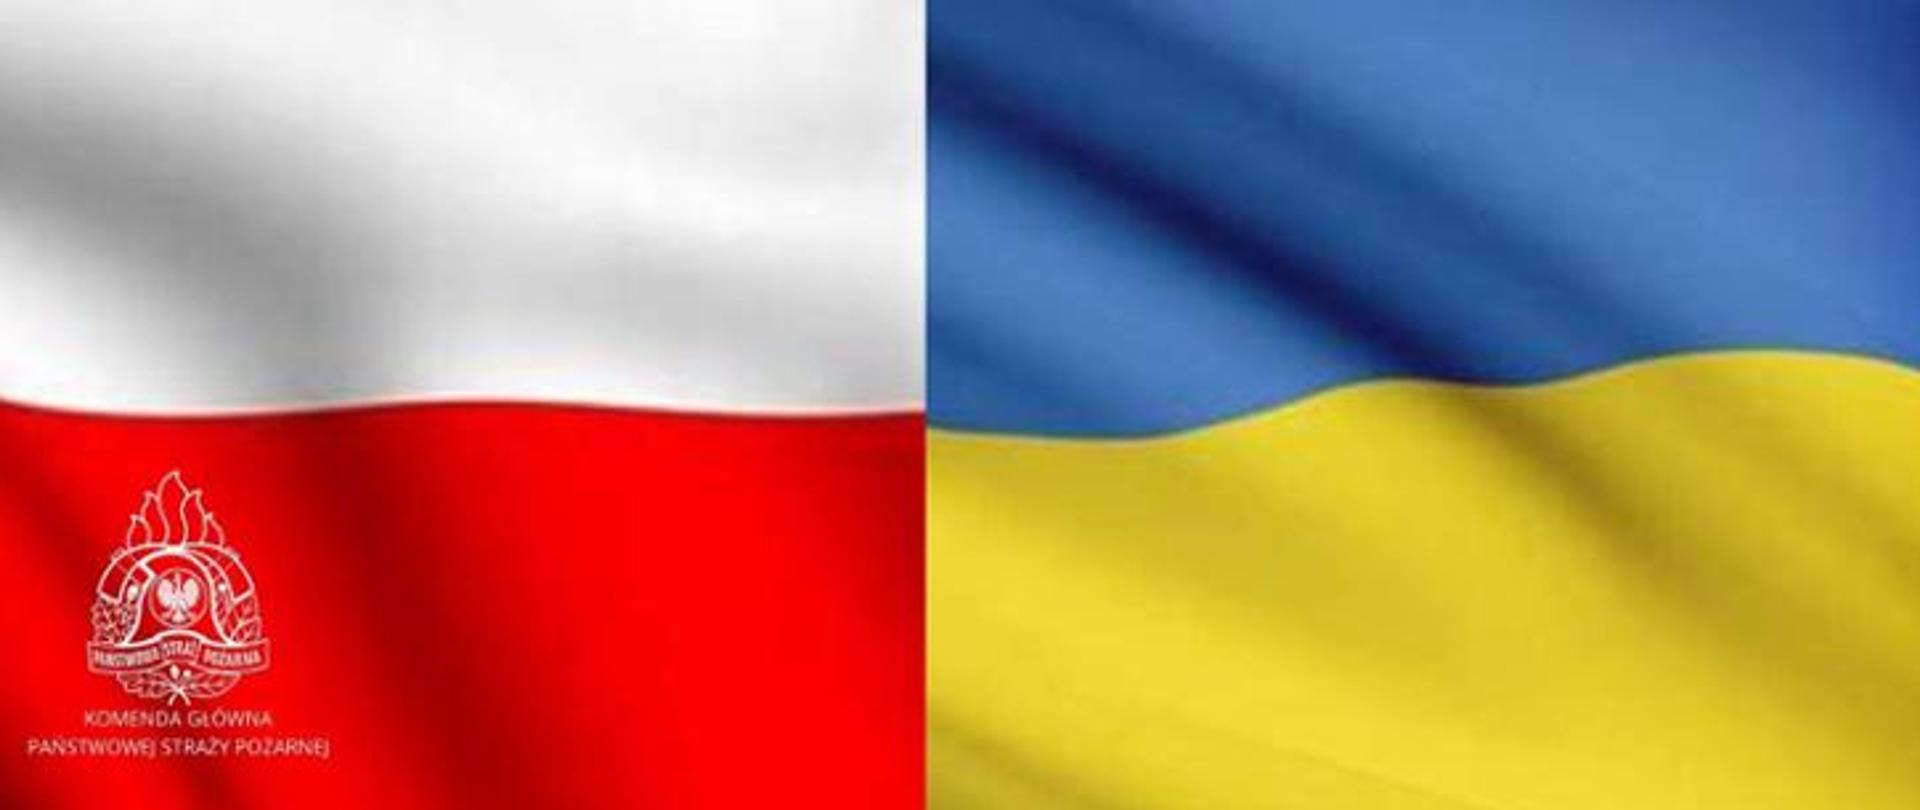 Zdjęcie flagi polskiej i ukraińskiej obok siebie. Polska flaga po lewej stronie z logiem Państwowej Straży Pożarnej, po prawej flaga ukraińska.